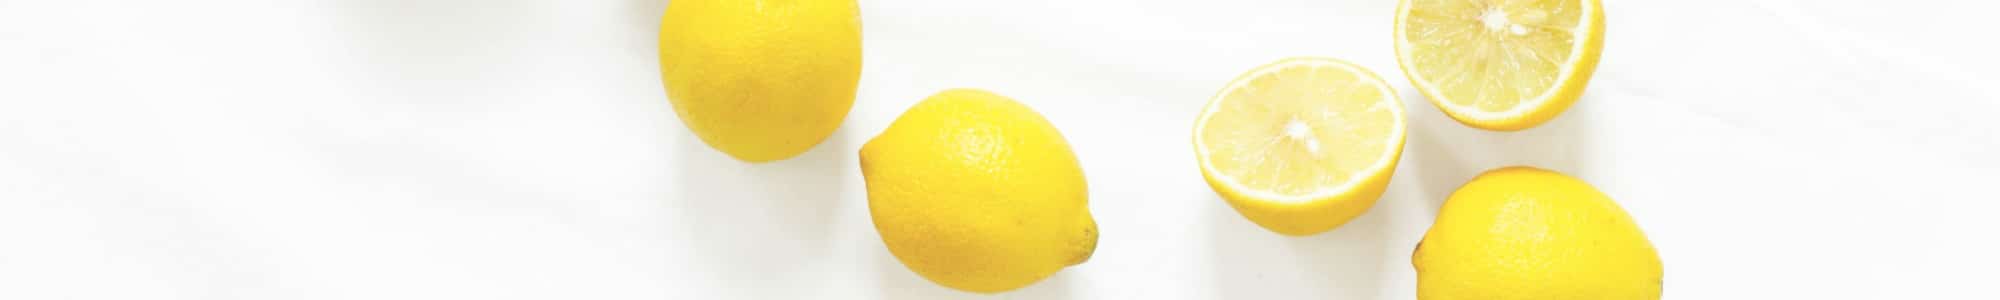 Lemon banner image